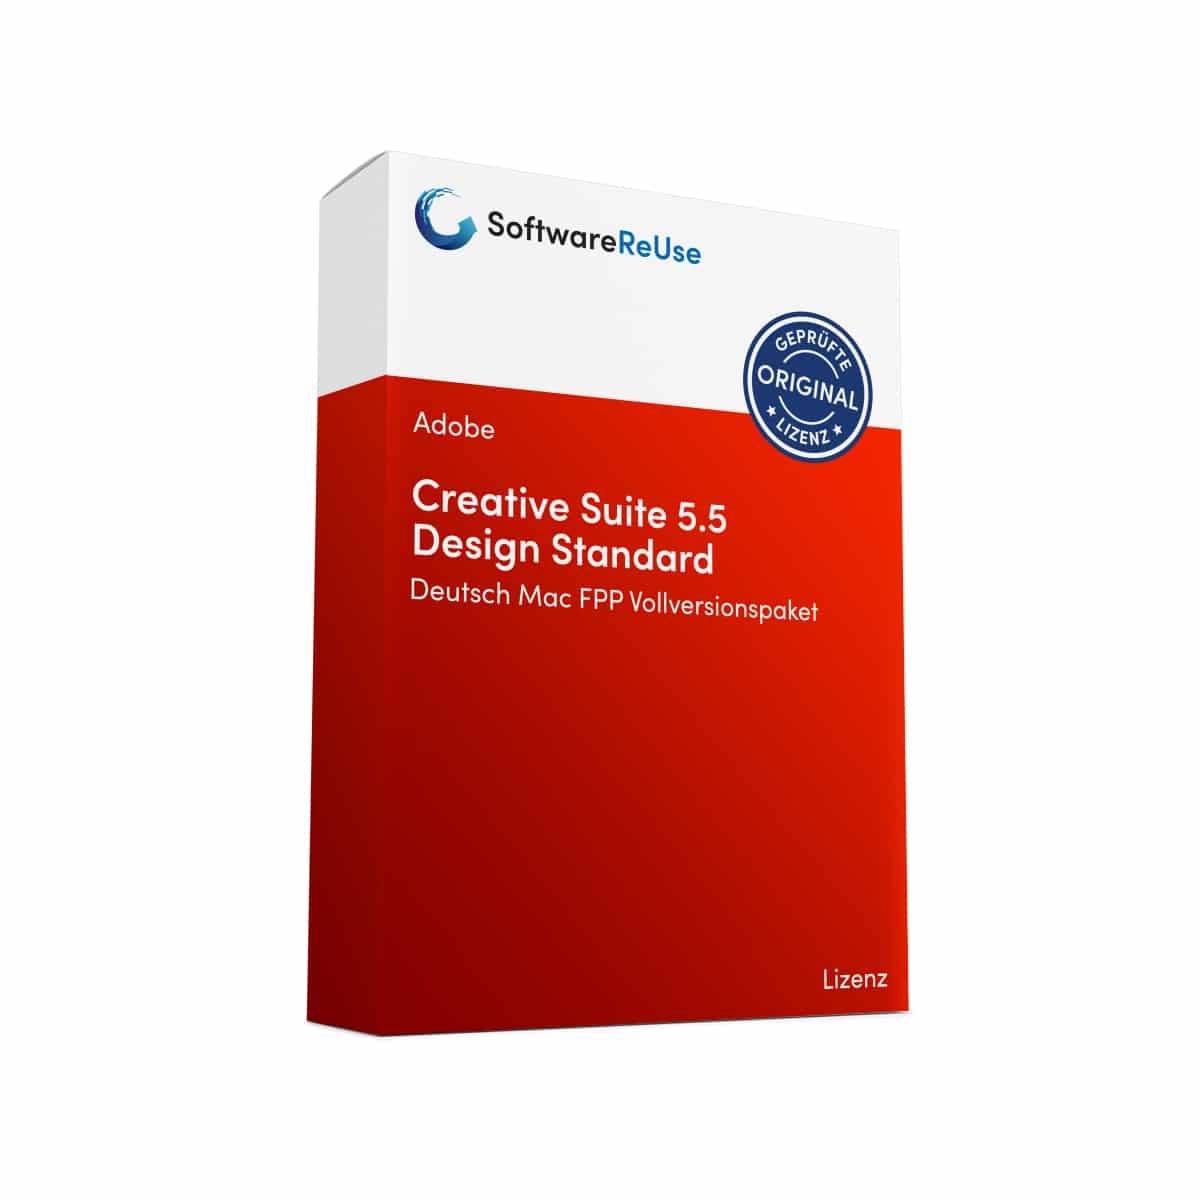 Creative Suite 5.5 Design Standard FPP Vollversionspaket – DE 2